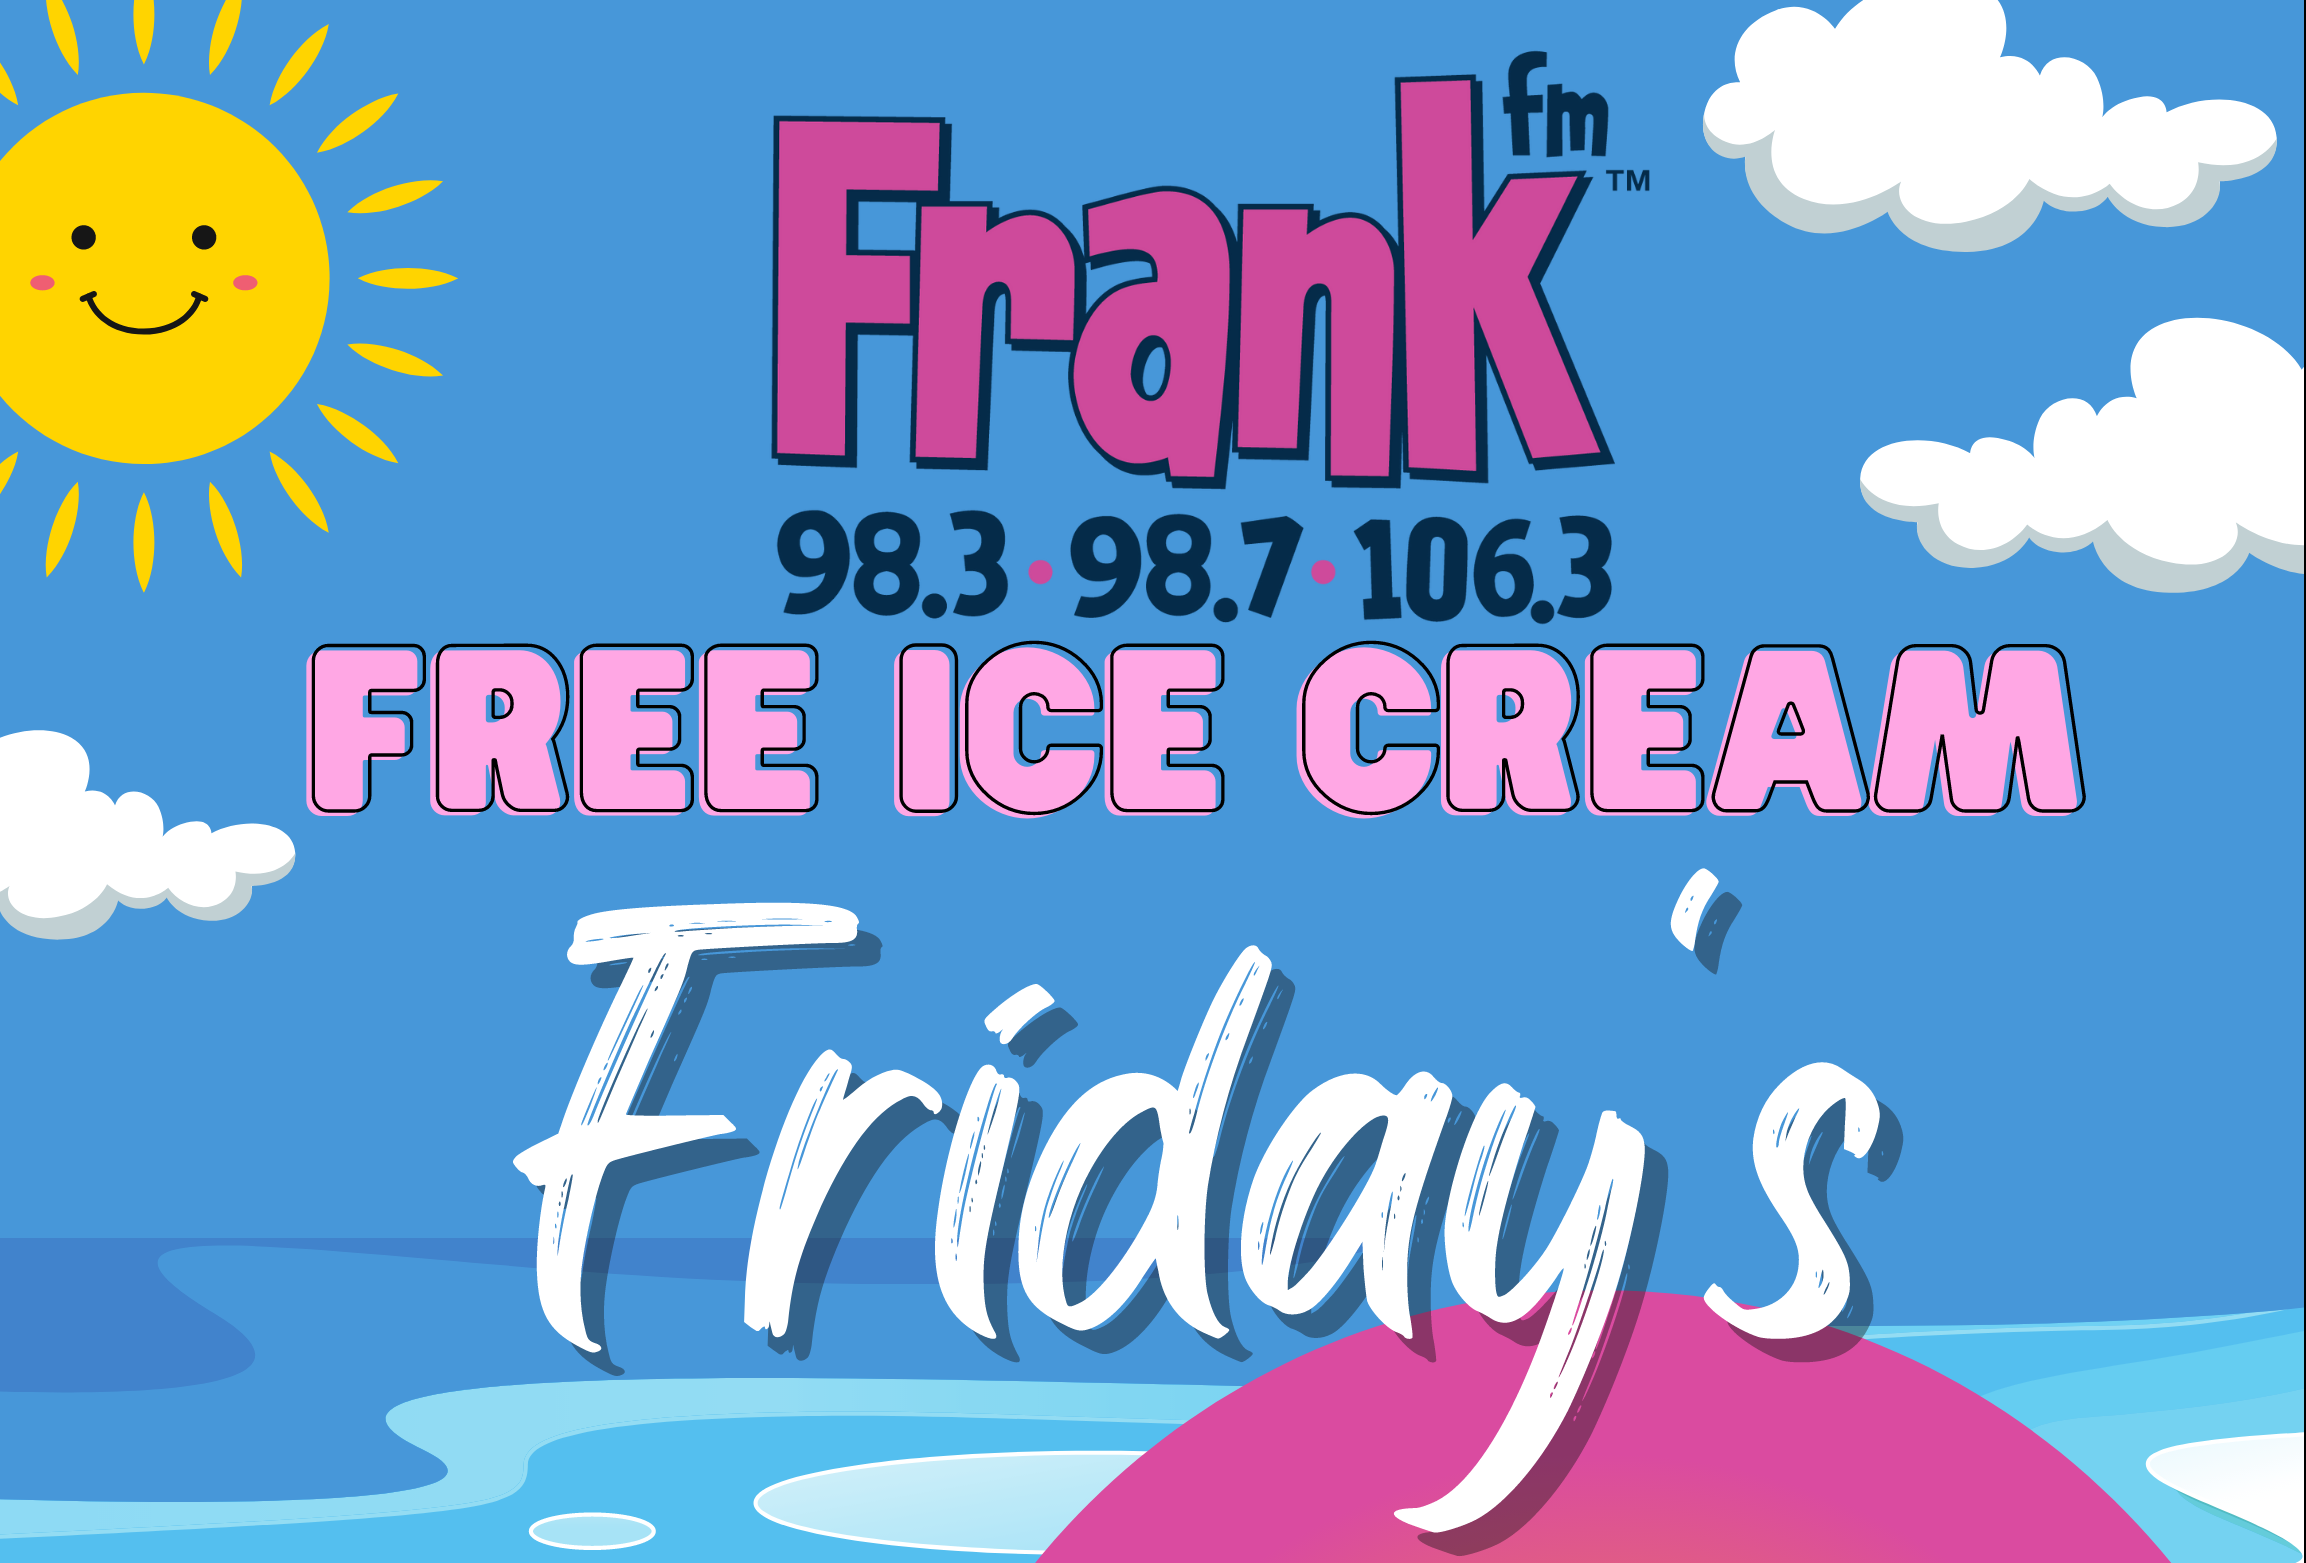 Free Ice Cream Friday’s!